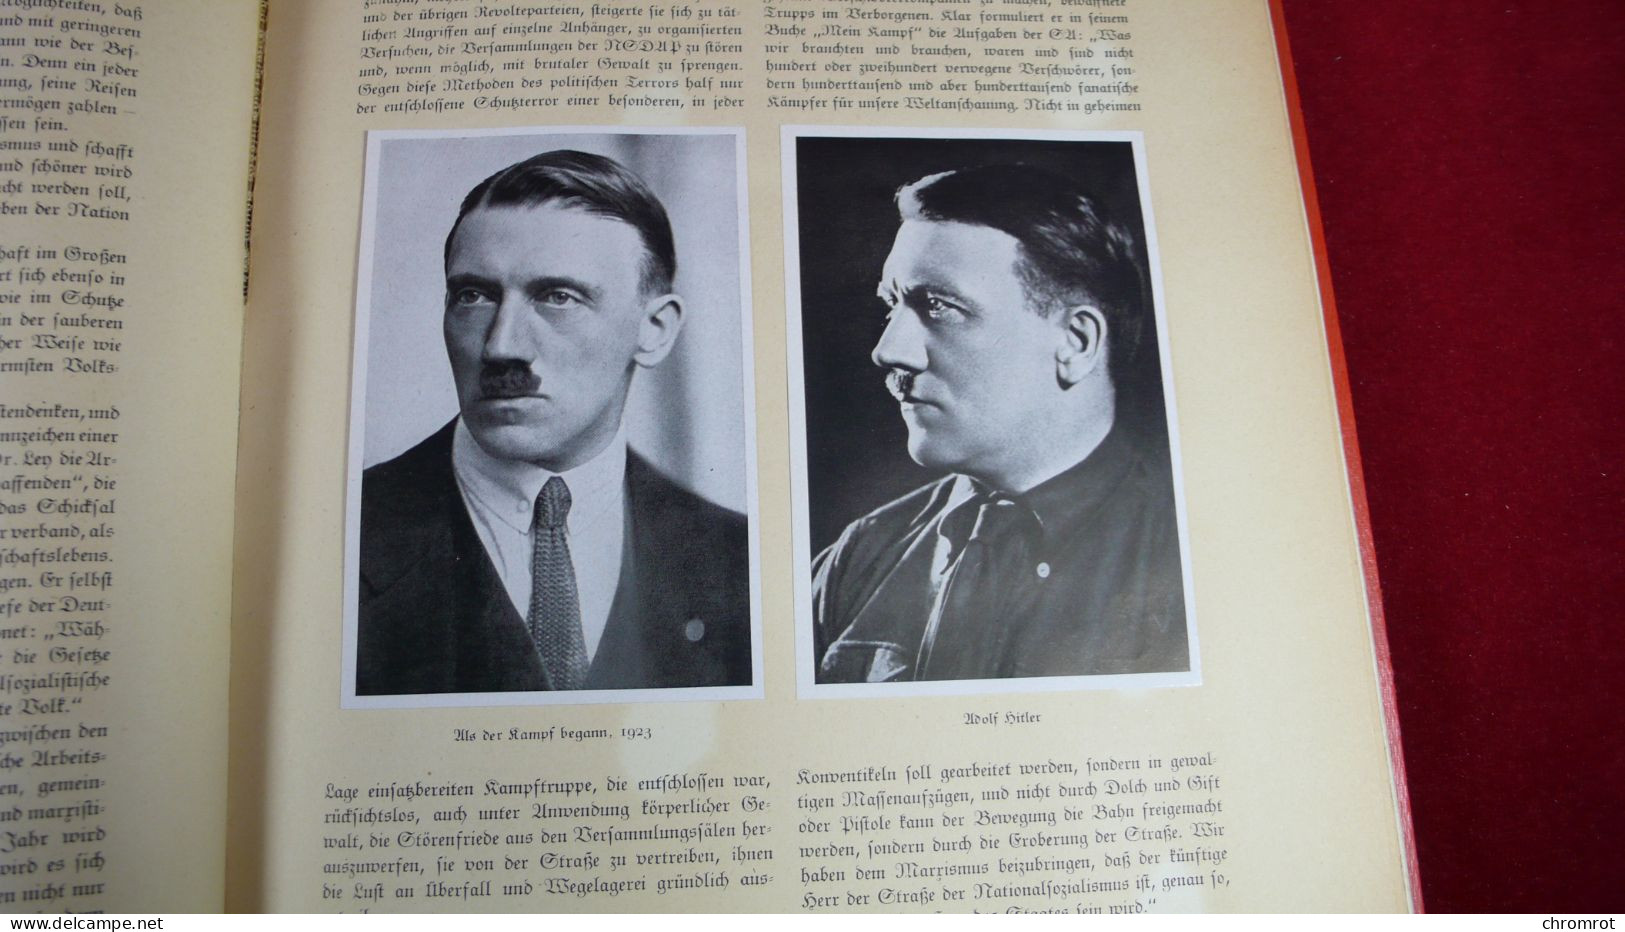 DEUTSCHLAND ERWACHT 1933 Werden Kampf und Sieg der NSDAP Cigaretten - Bilderdienst 152 Seiten Bilder komplett